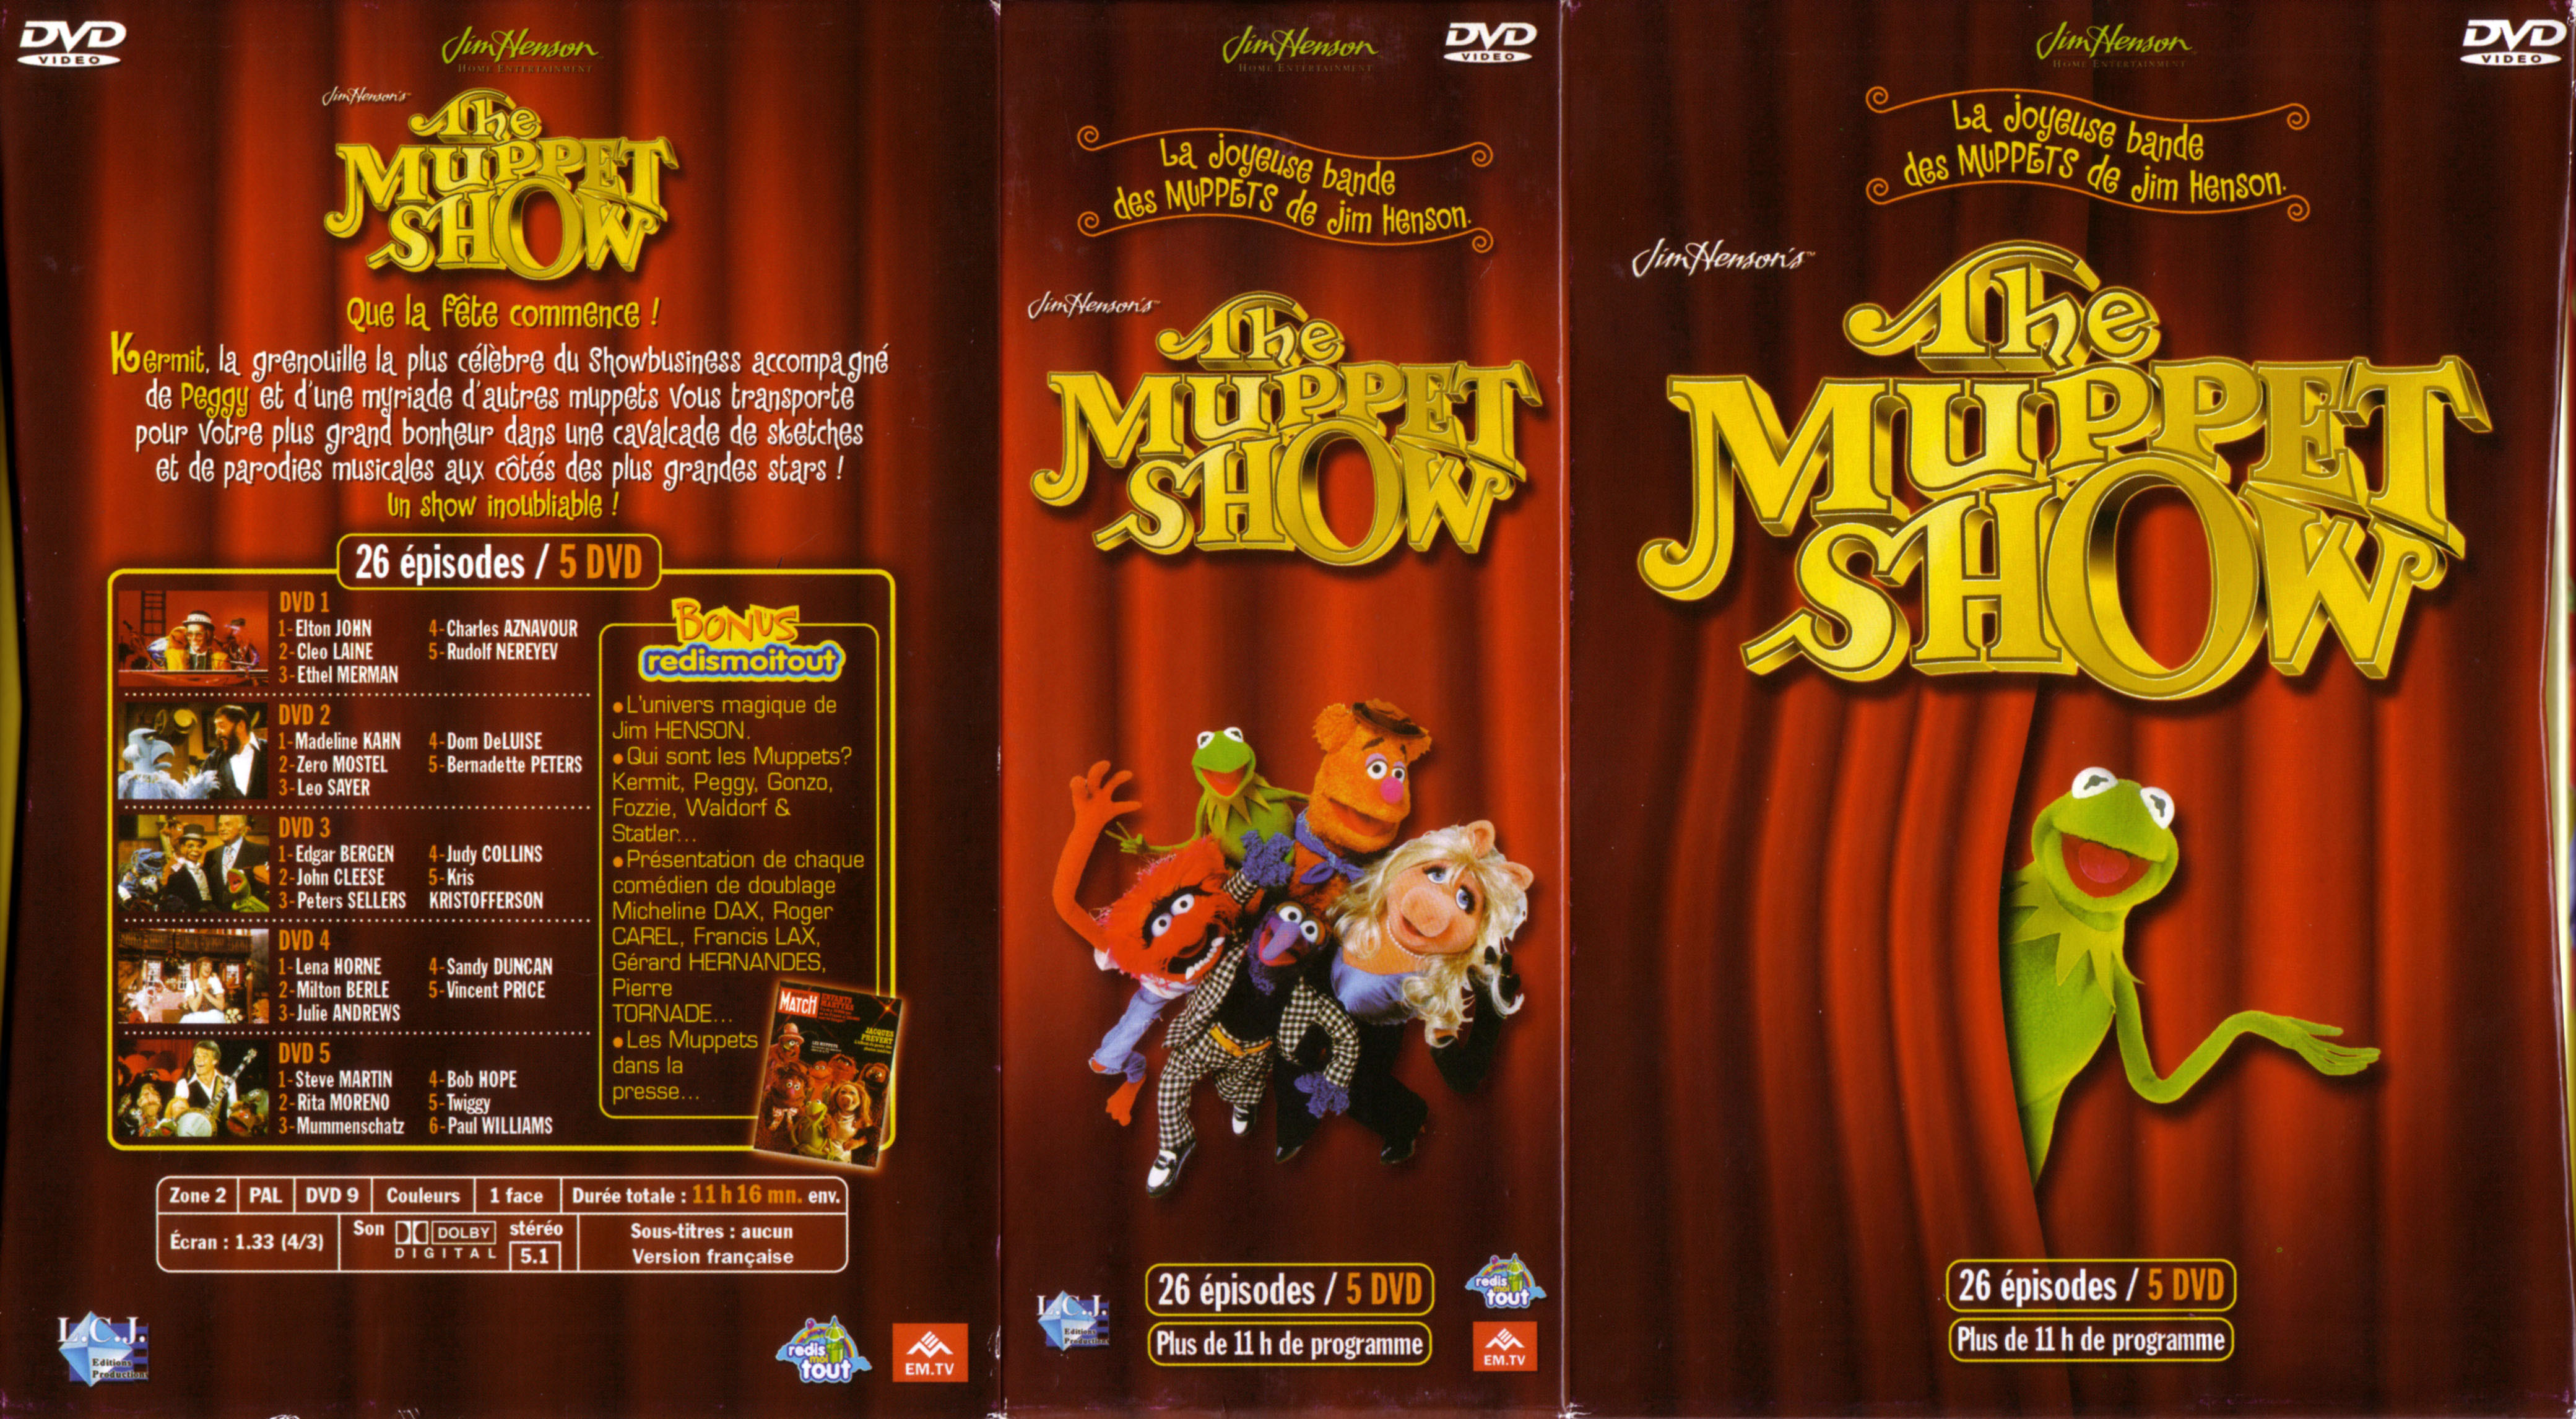 Jaquette DVD The muppet show COFFRET vol 1